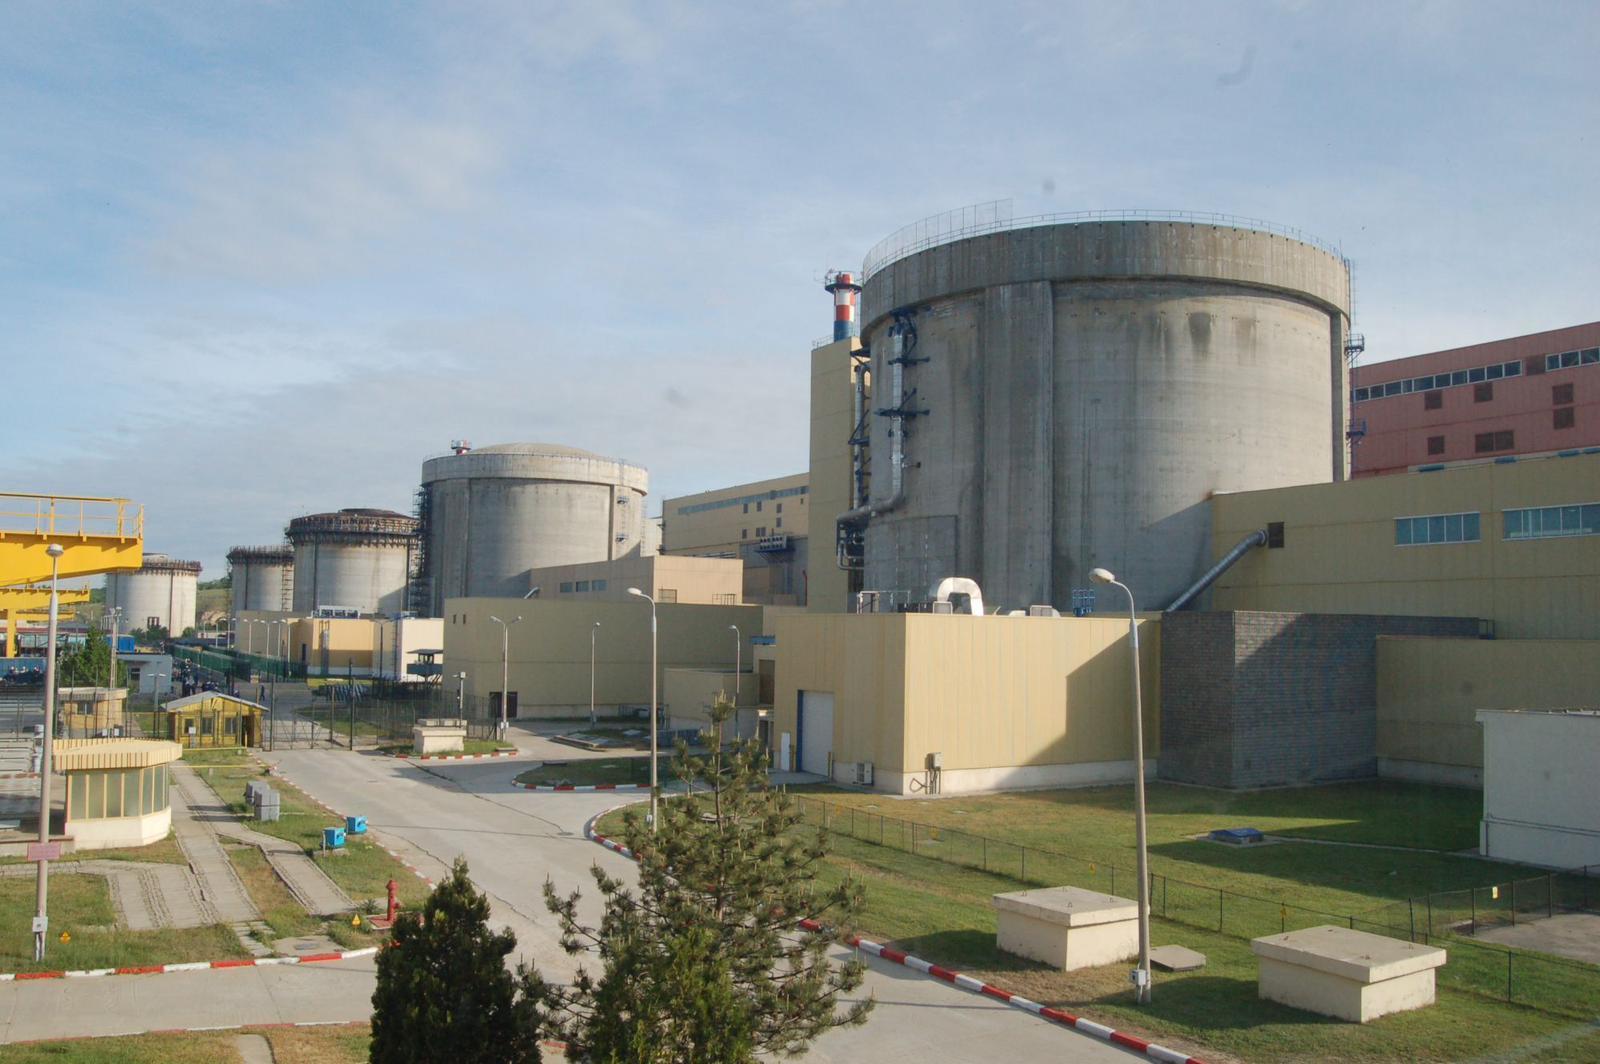 Agenţia de rating Fitch a confirmat rating-ul BBB-, cu perspectiva stabilă, acordat Nuclearelectrica